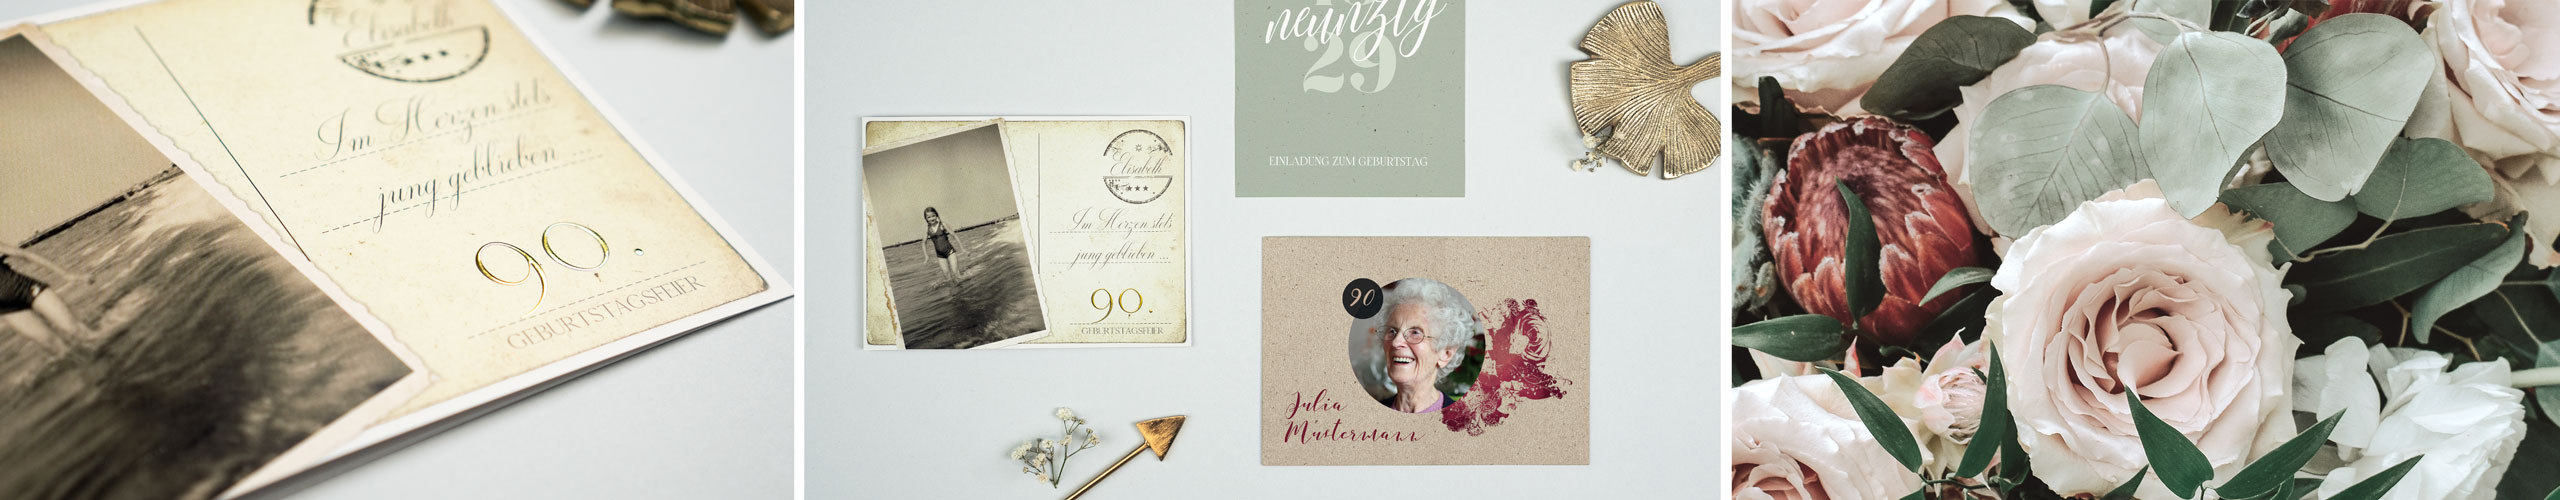 Einladungskarten zum 90. Geburtstag mit verschiedenen Motiven